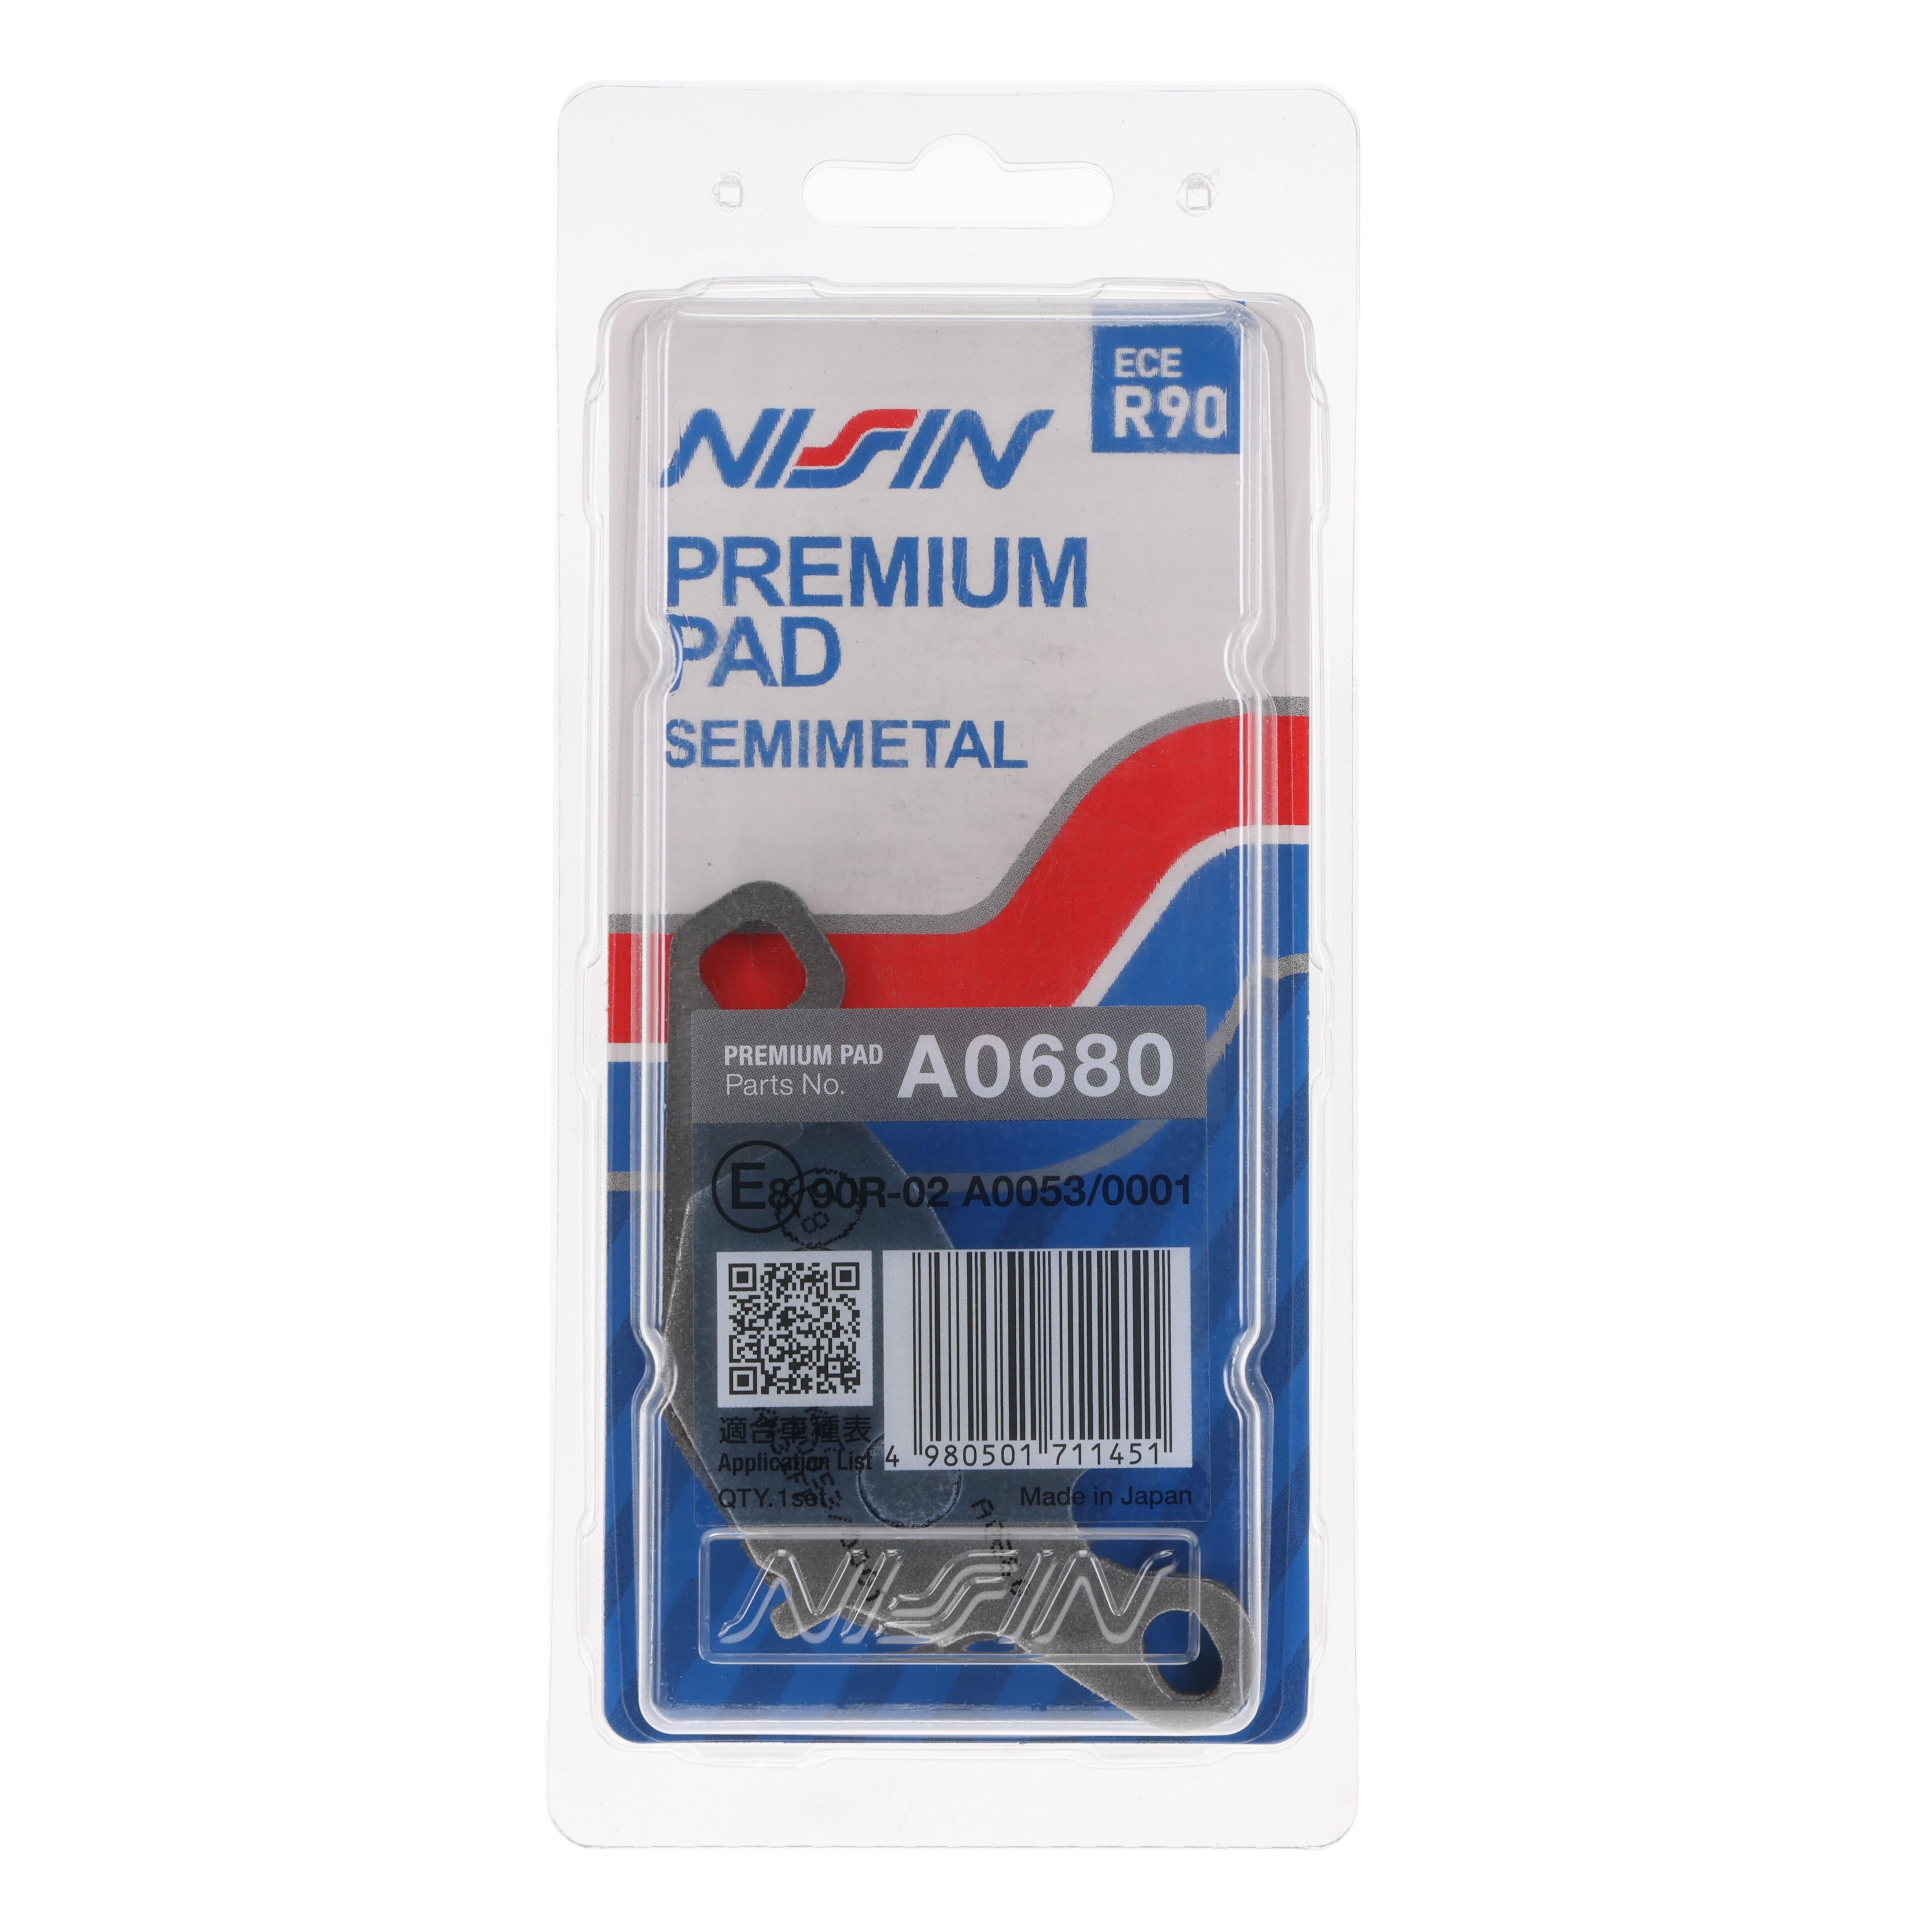 Nissin-Premium-PAD.png